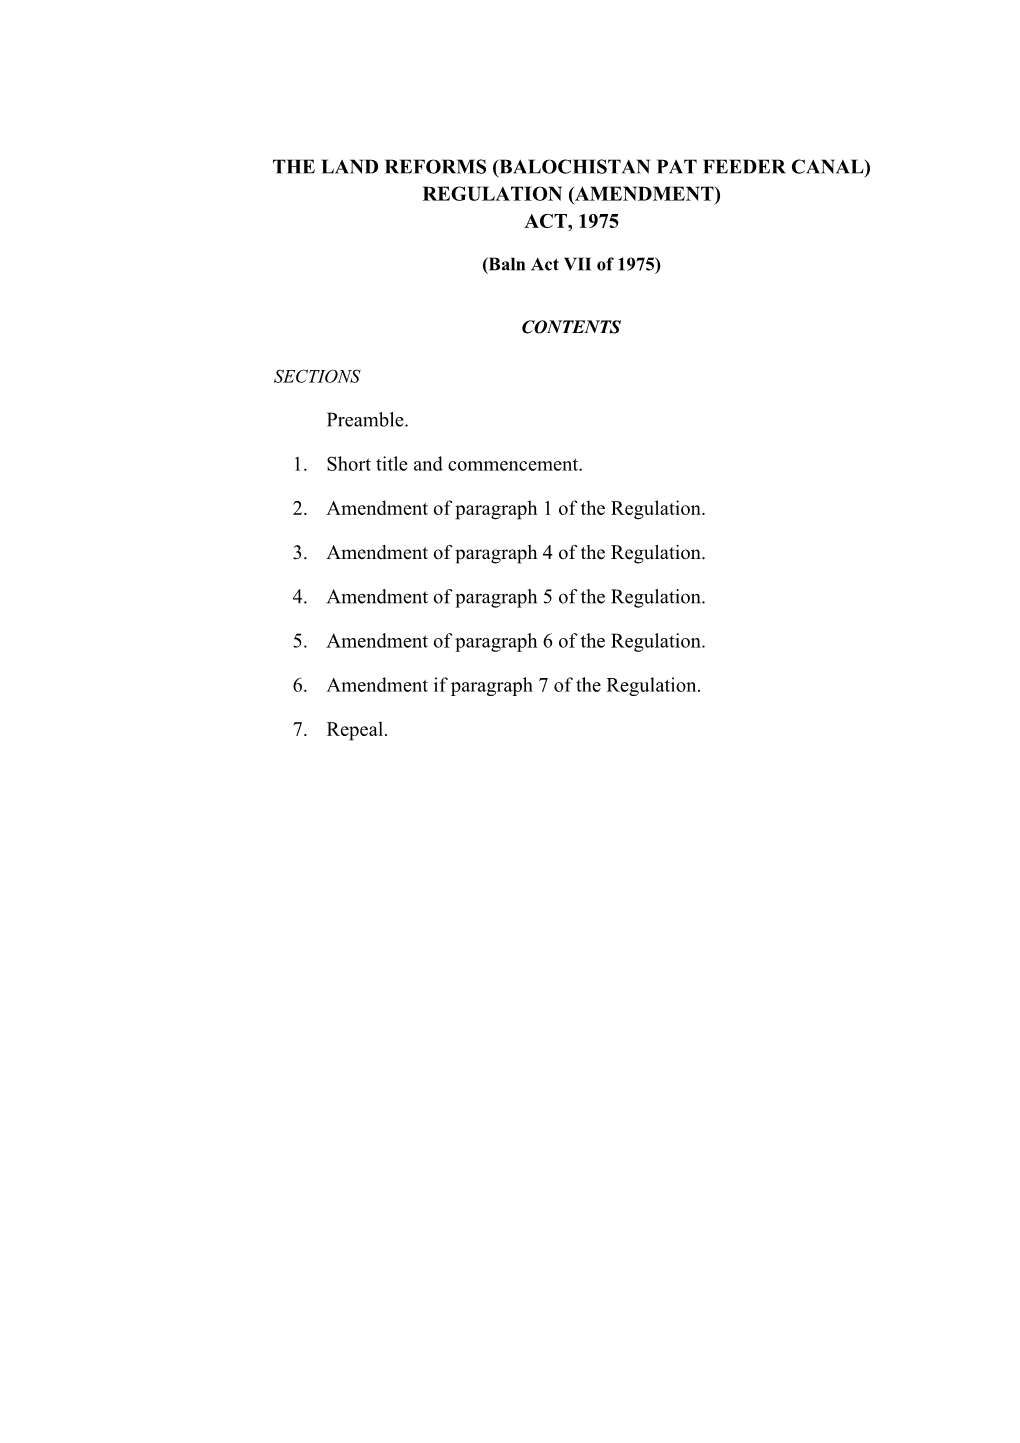 (Balochistan Pat Feeder Canal) Regulation (Amendment) Act, 1975